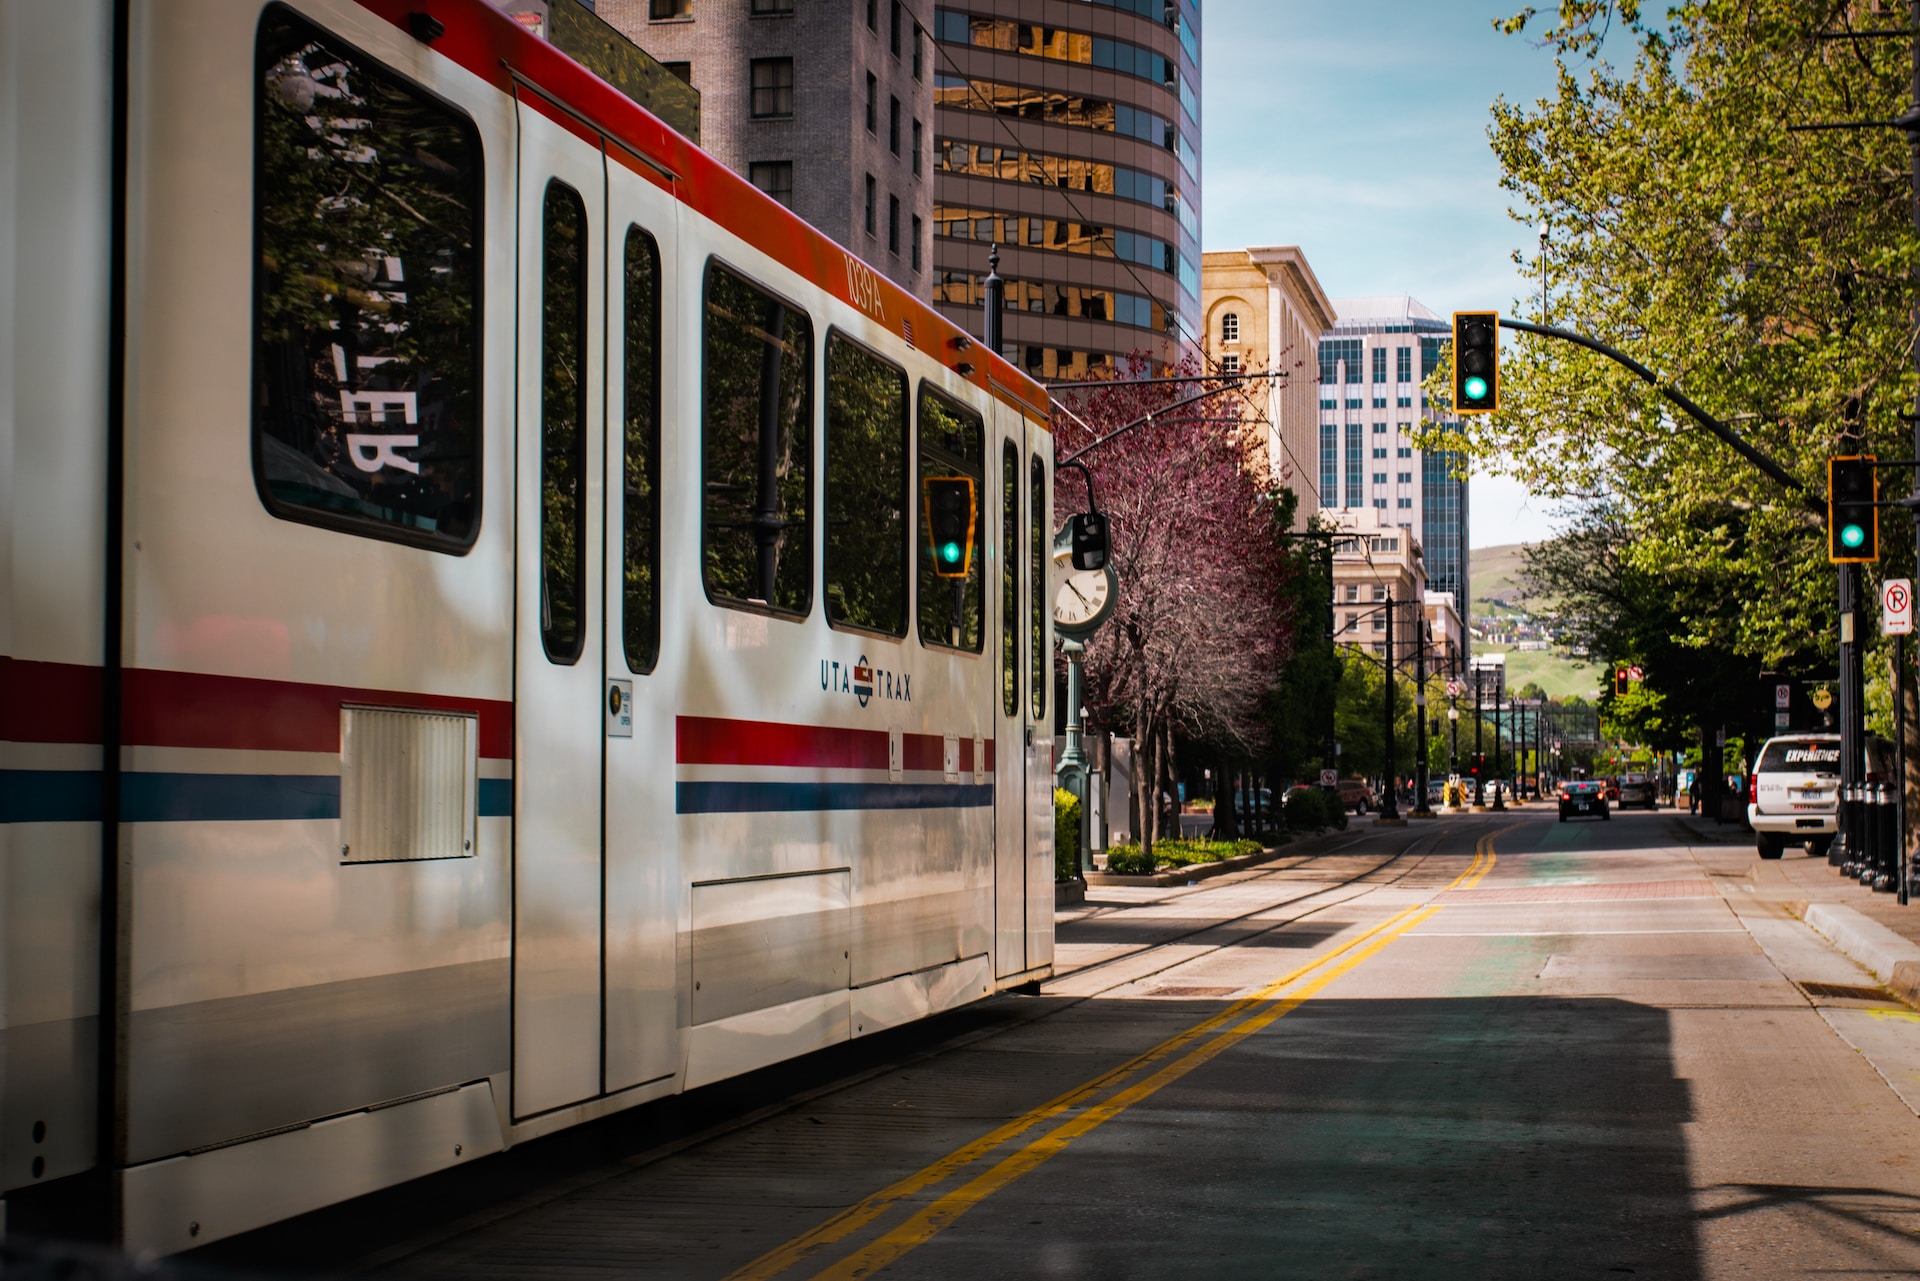 A tram in Salt Lake City.